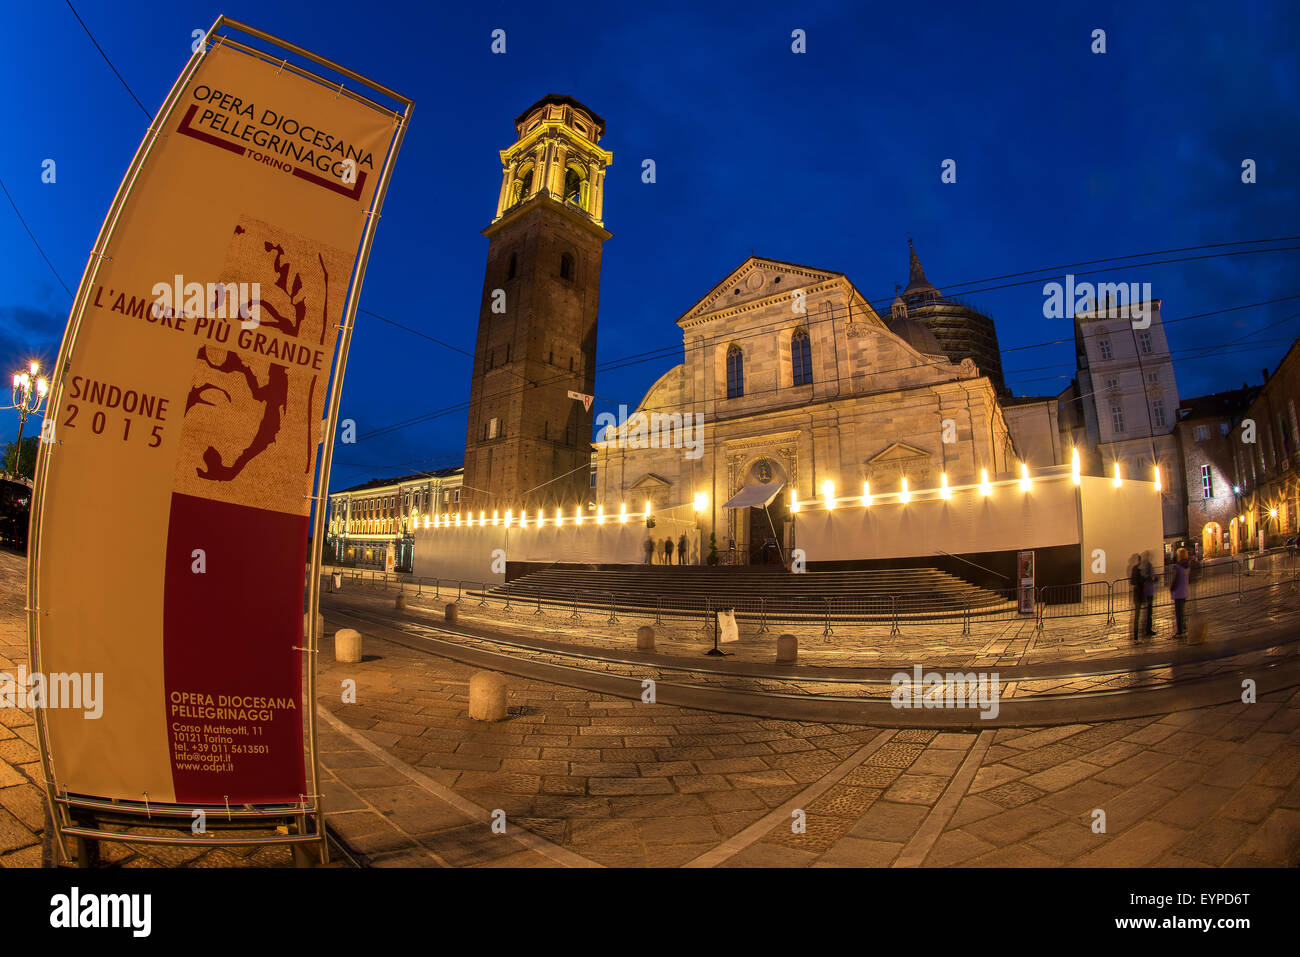 La cattedrale della Sindone giorni, Torino, Italia Foto Stock